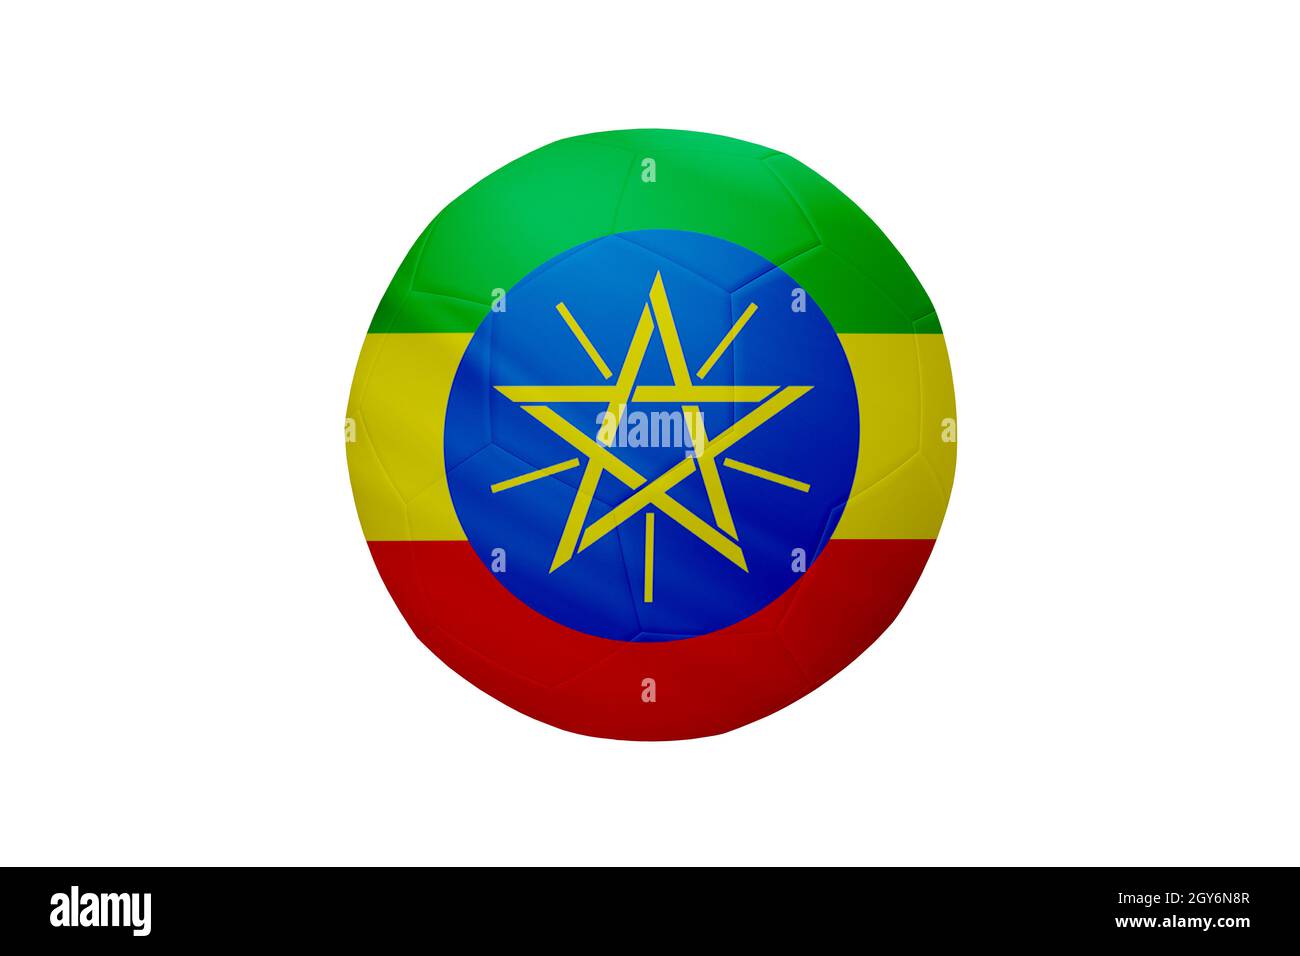 Fußball in den Farben der äthiopischen Flagge isoliert auf weißem Hintergrund. In einem konzeptionellen Meisterschaftsbild, das Äthiopien unterstützt. Stockfoto